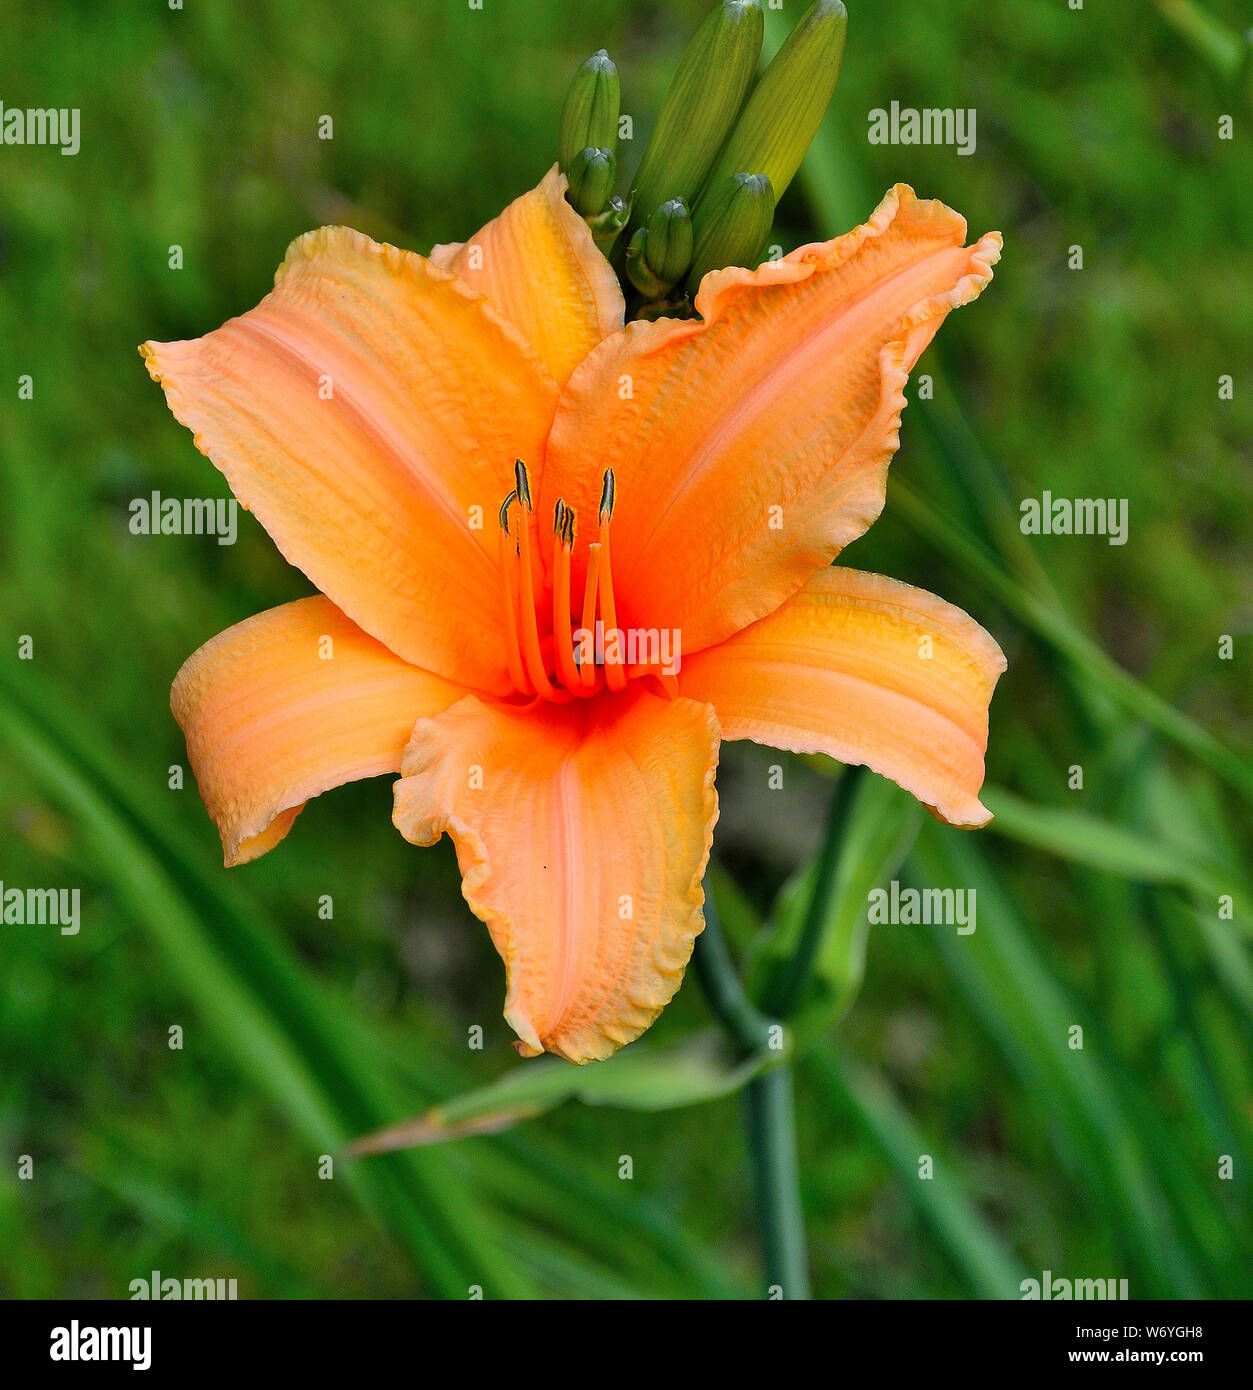 El lirio anaranjado fotografías e imágenes de alta resolución - Alamy